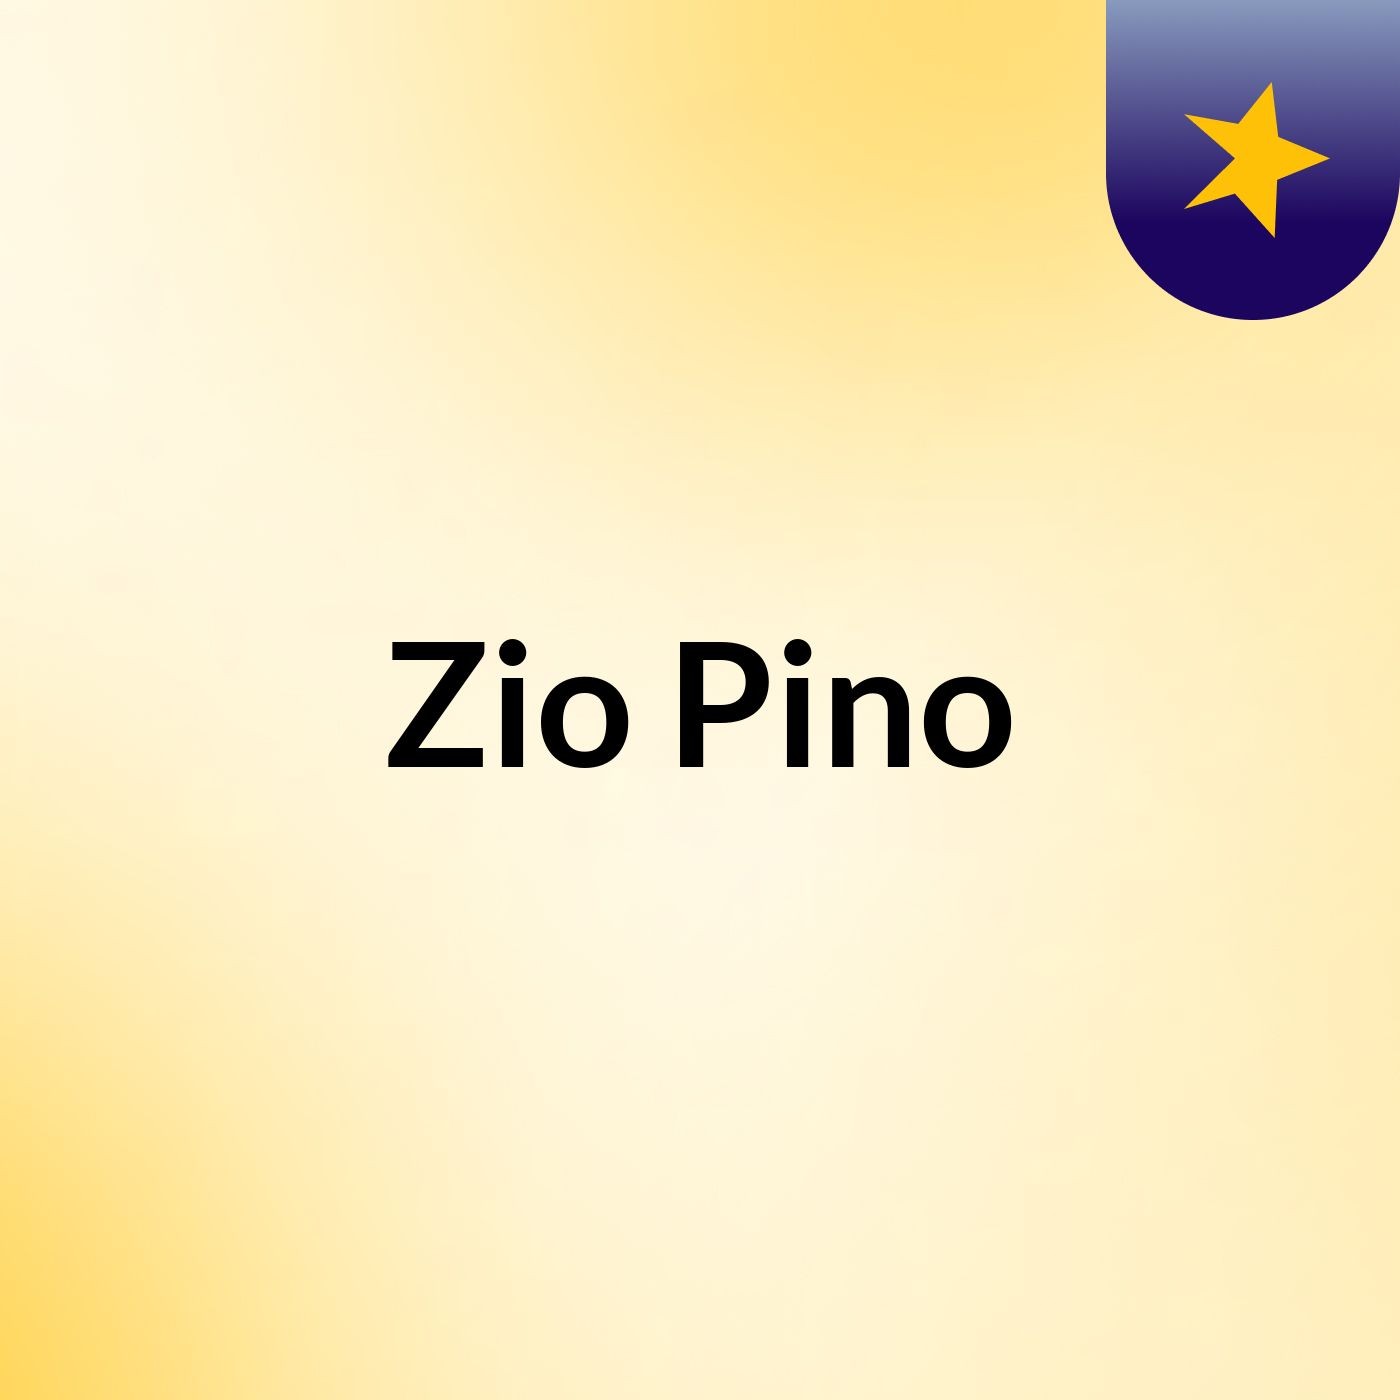 Zio Pino